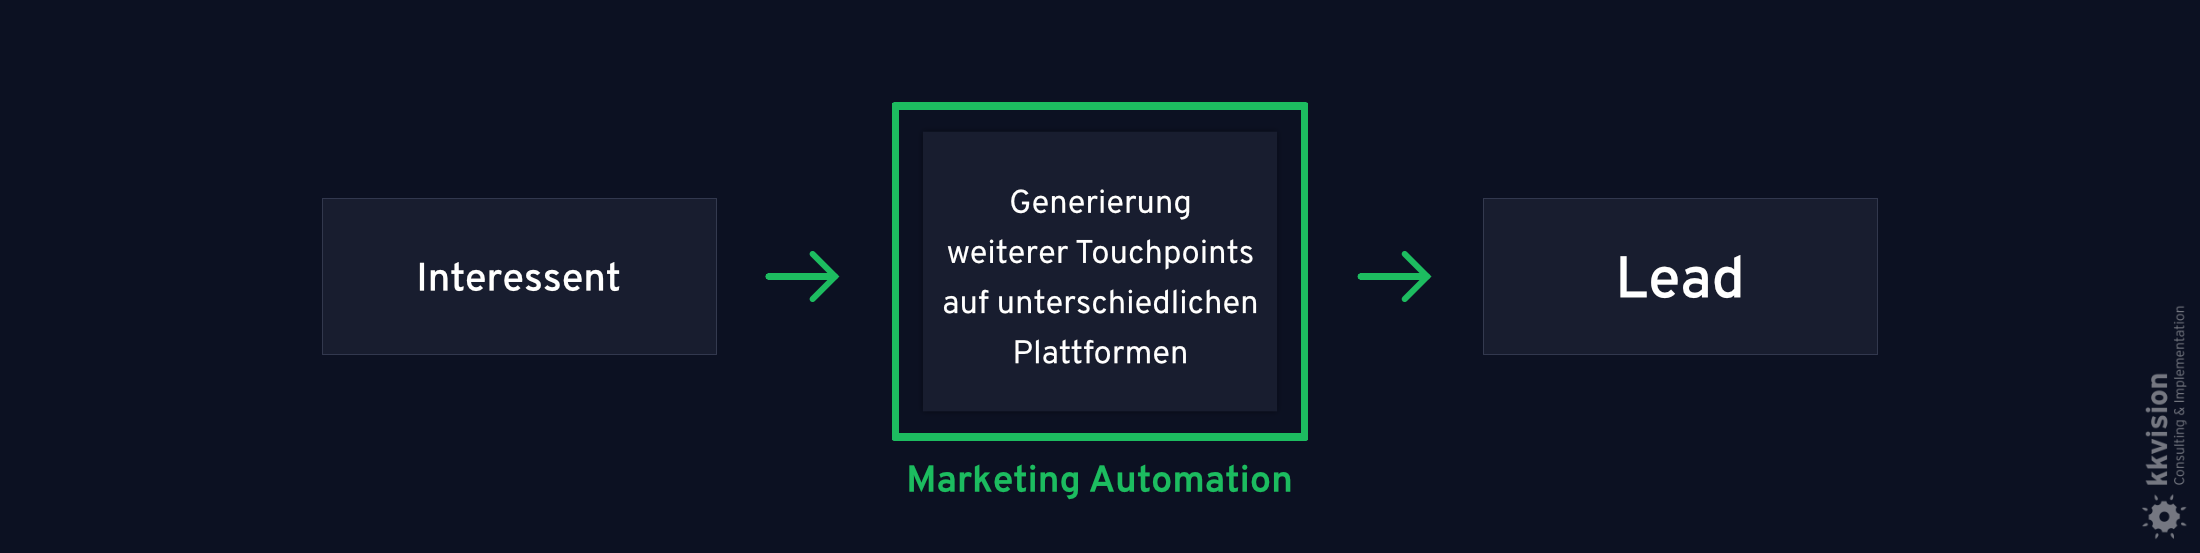 B2B Marketing Automation_7